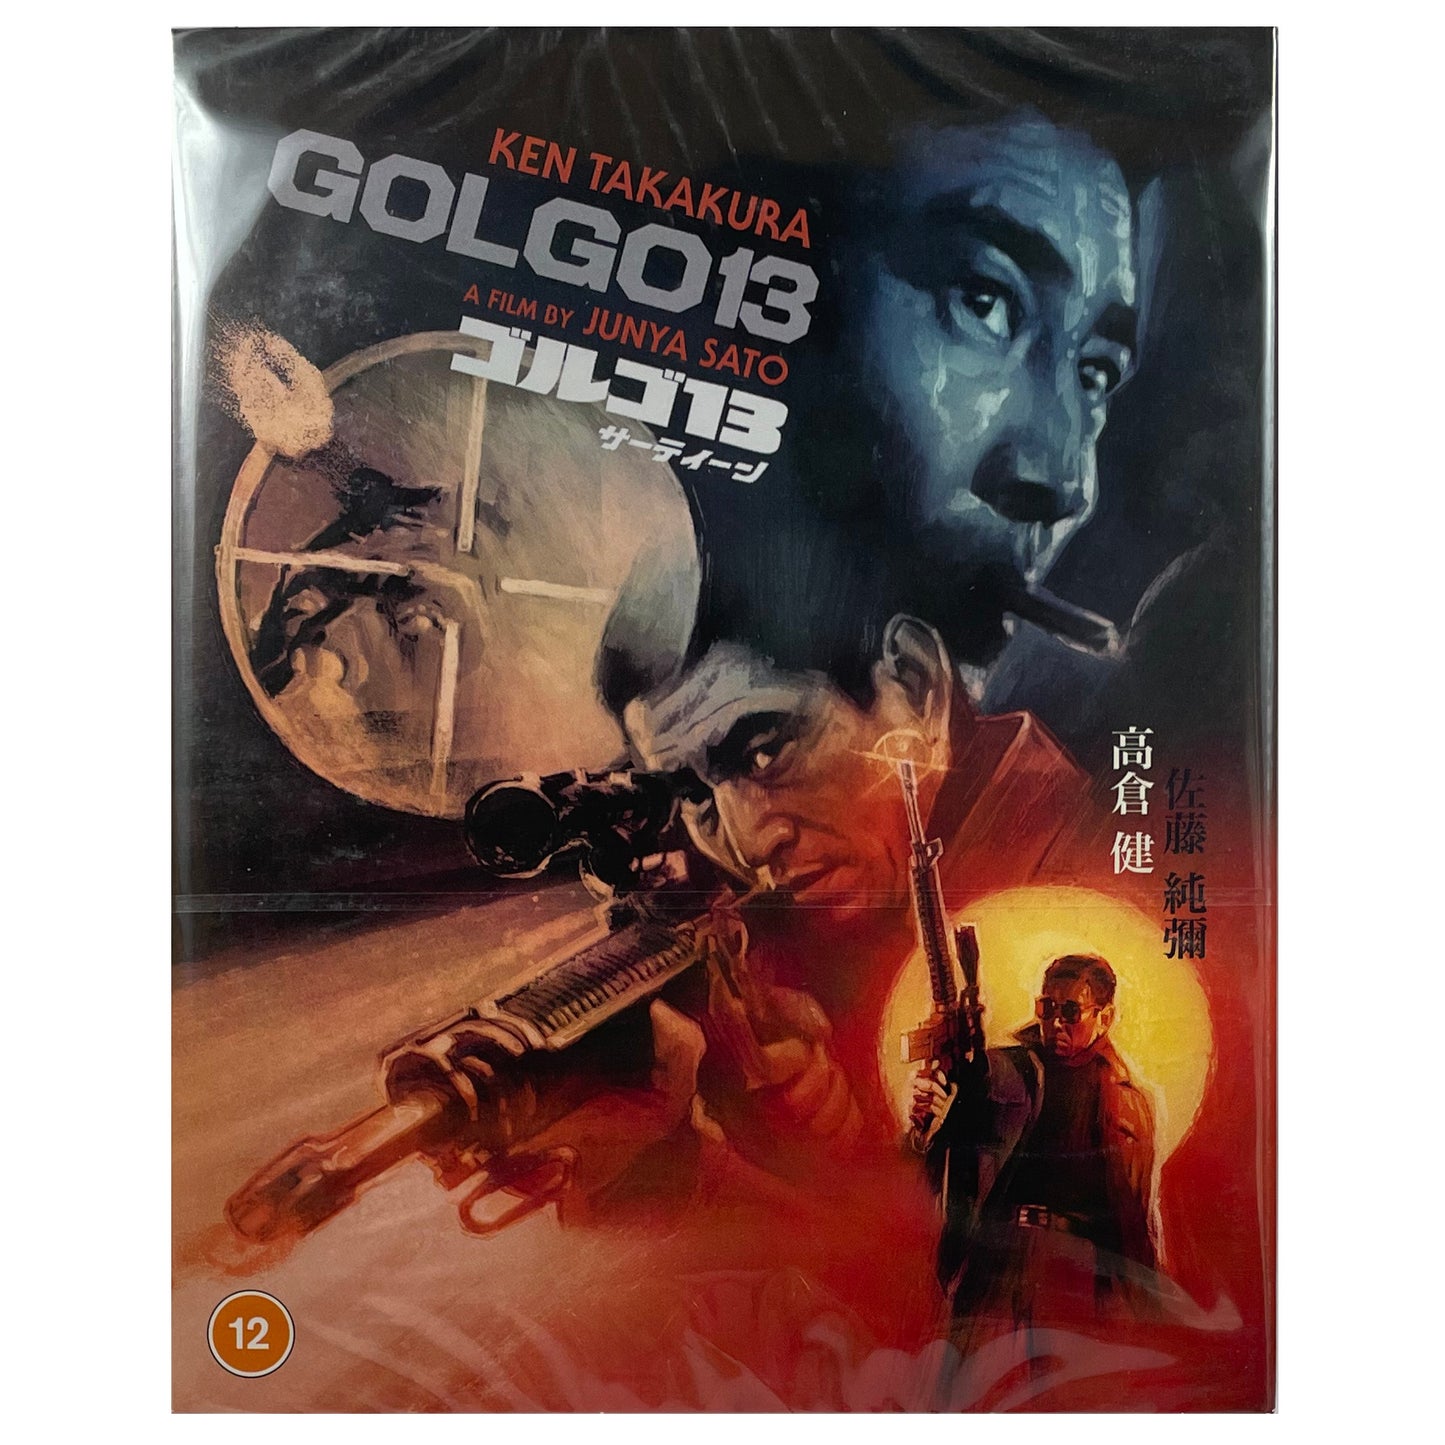 Golgo 13 Blu-Ray - Limited Edition